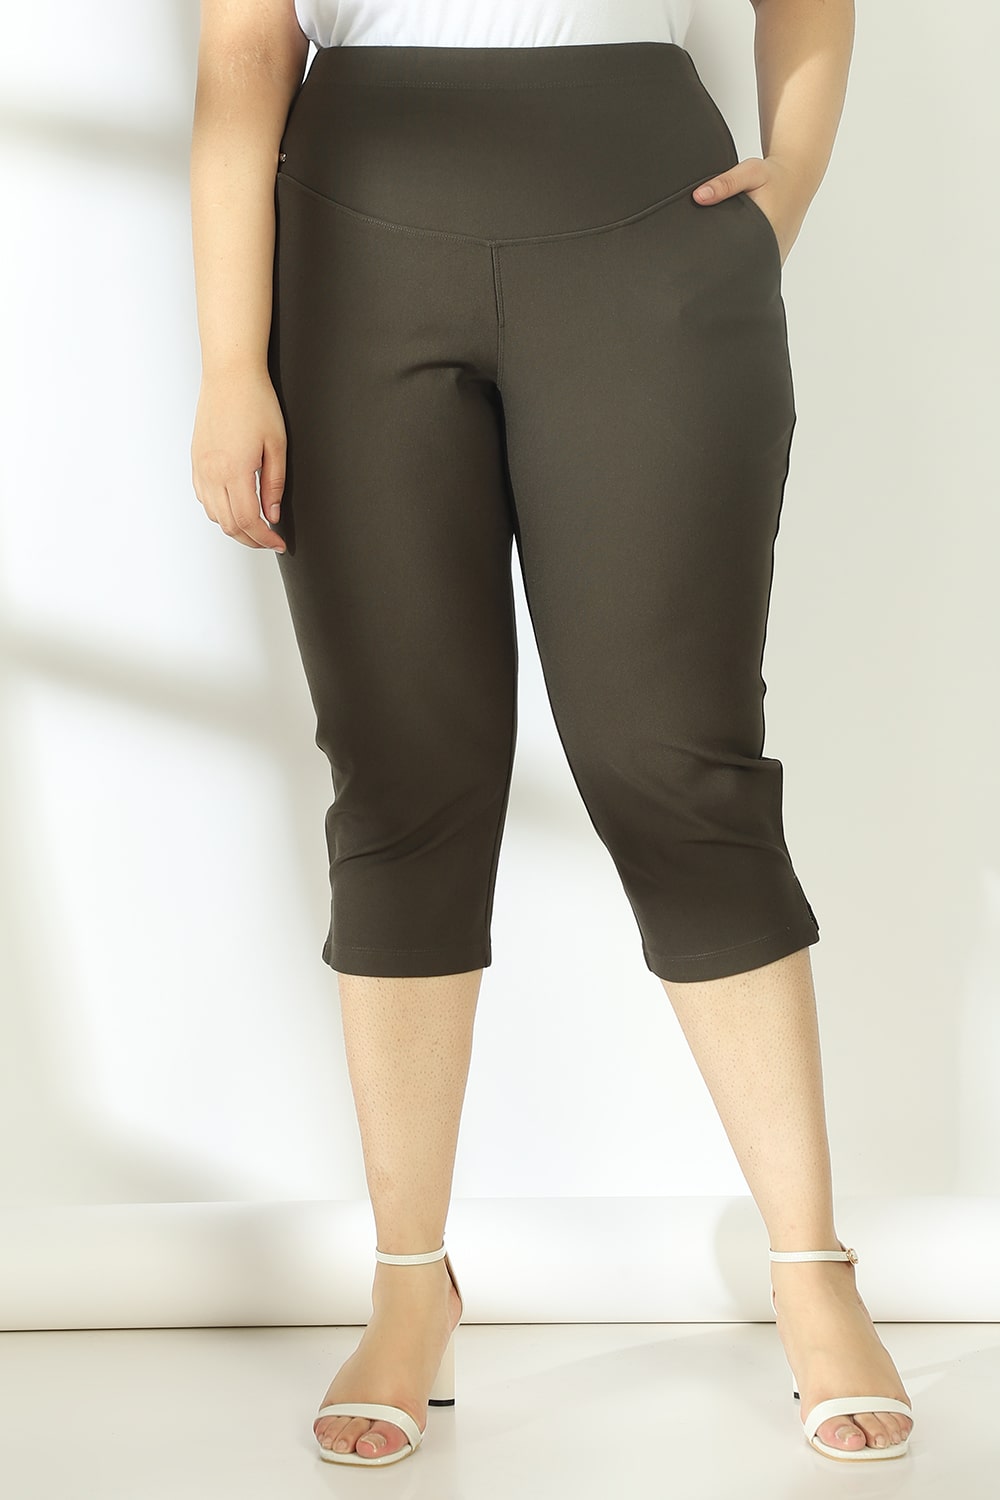 Plus Size Caprs For Women - Buy Plus Size Capri Pants